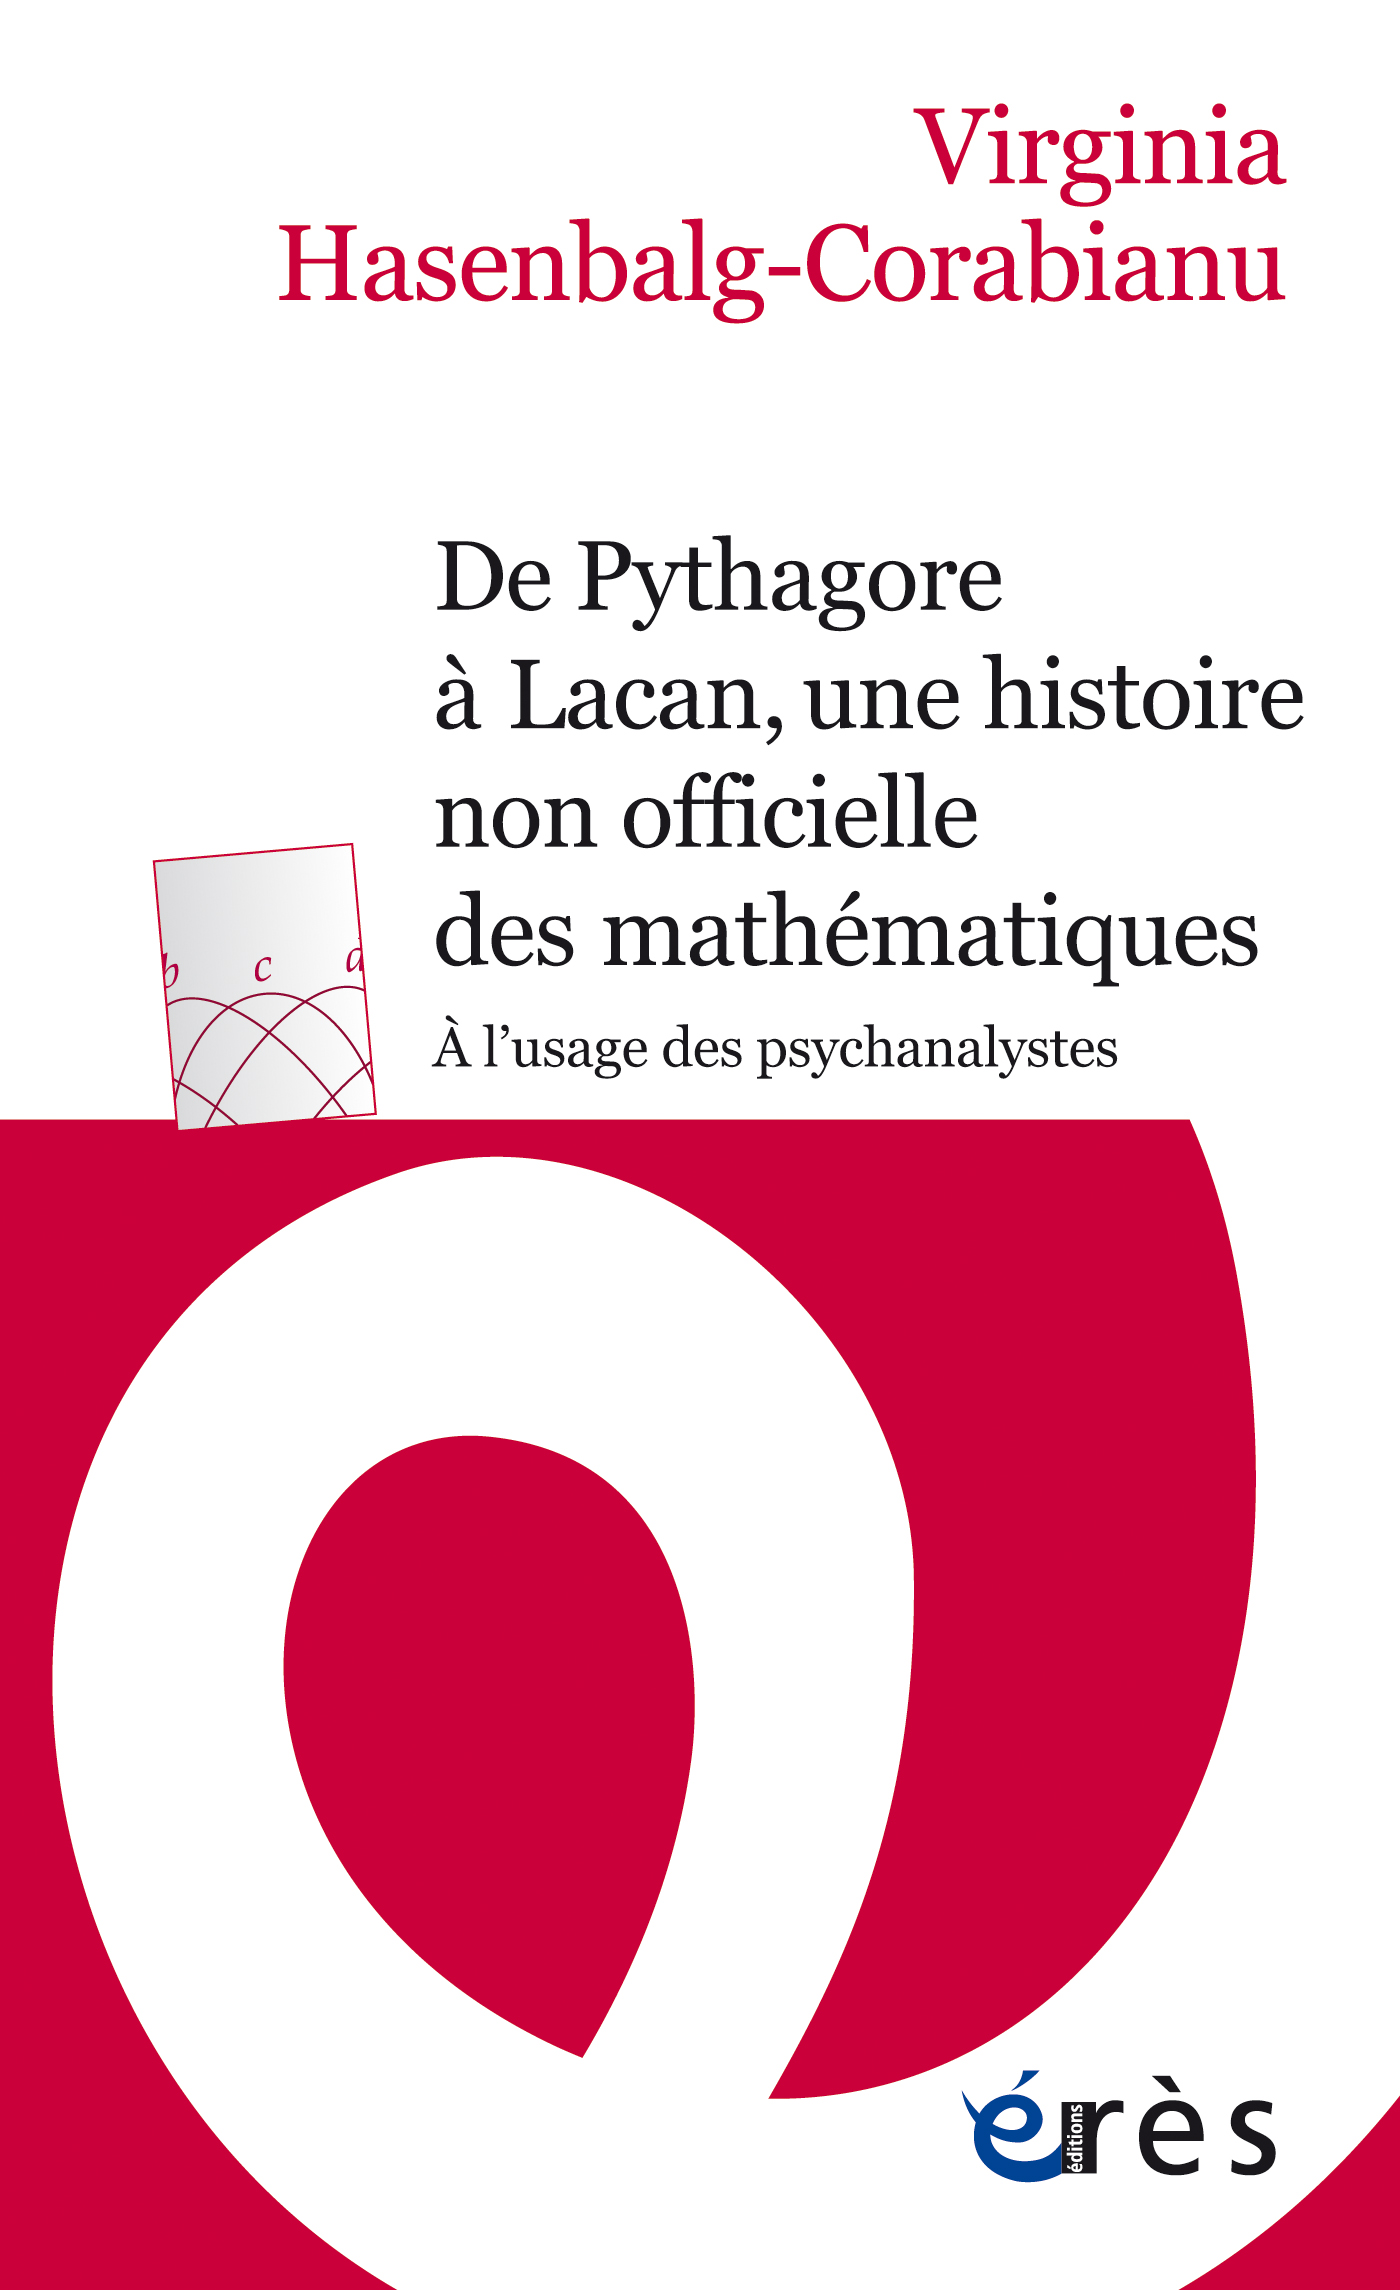 Couverture du livre "De Pythagore à Lacan"